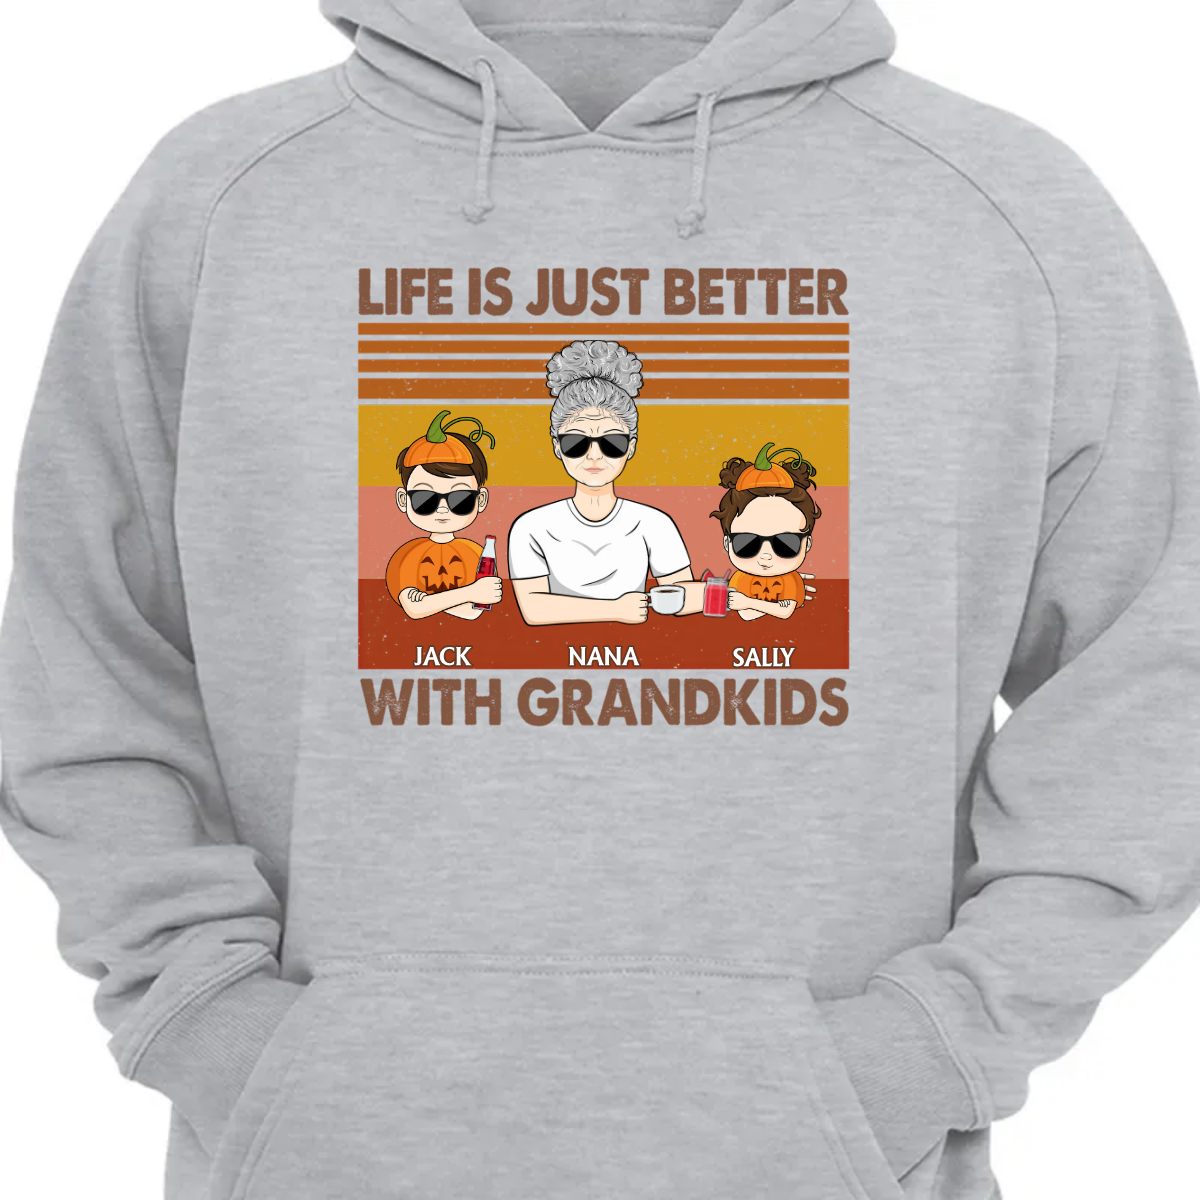 Life Is Better With Grandkids - おばあちゃんへのギフト - パーソナライズされたカスタム パーカー スウェットシャツ